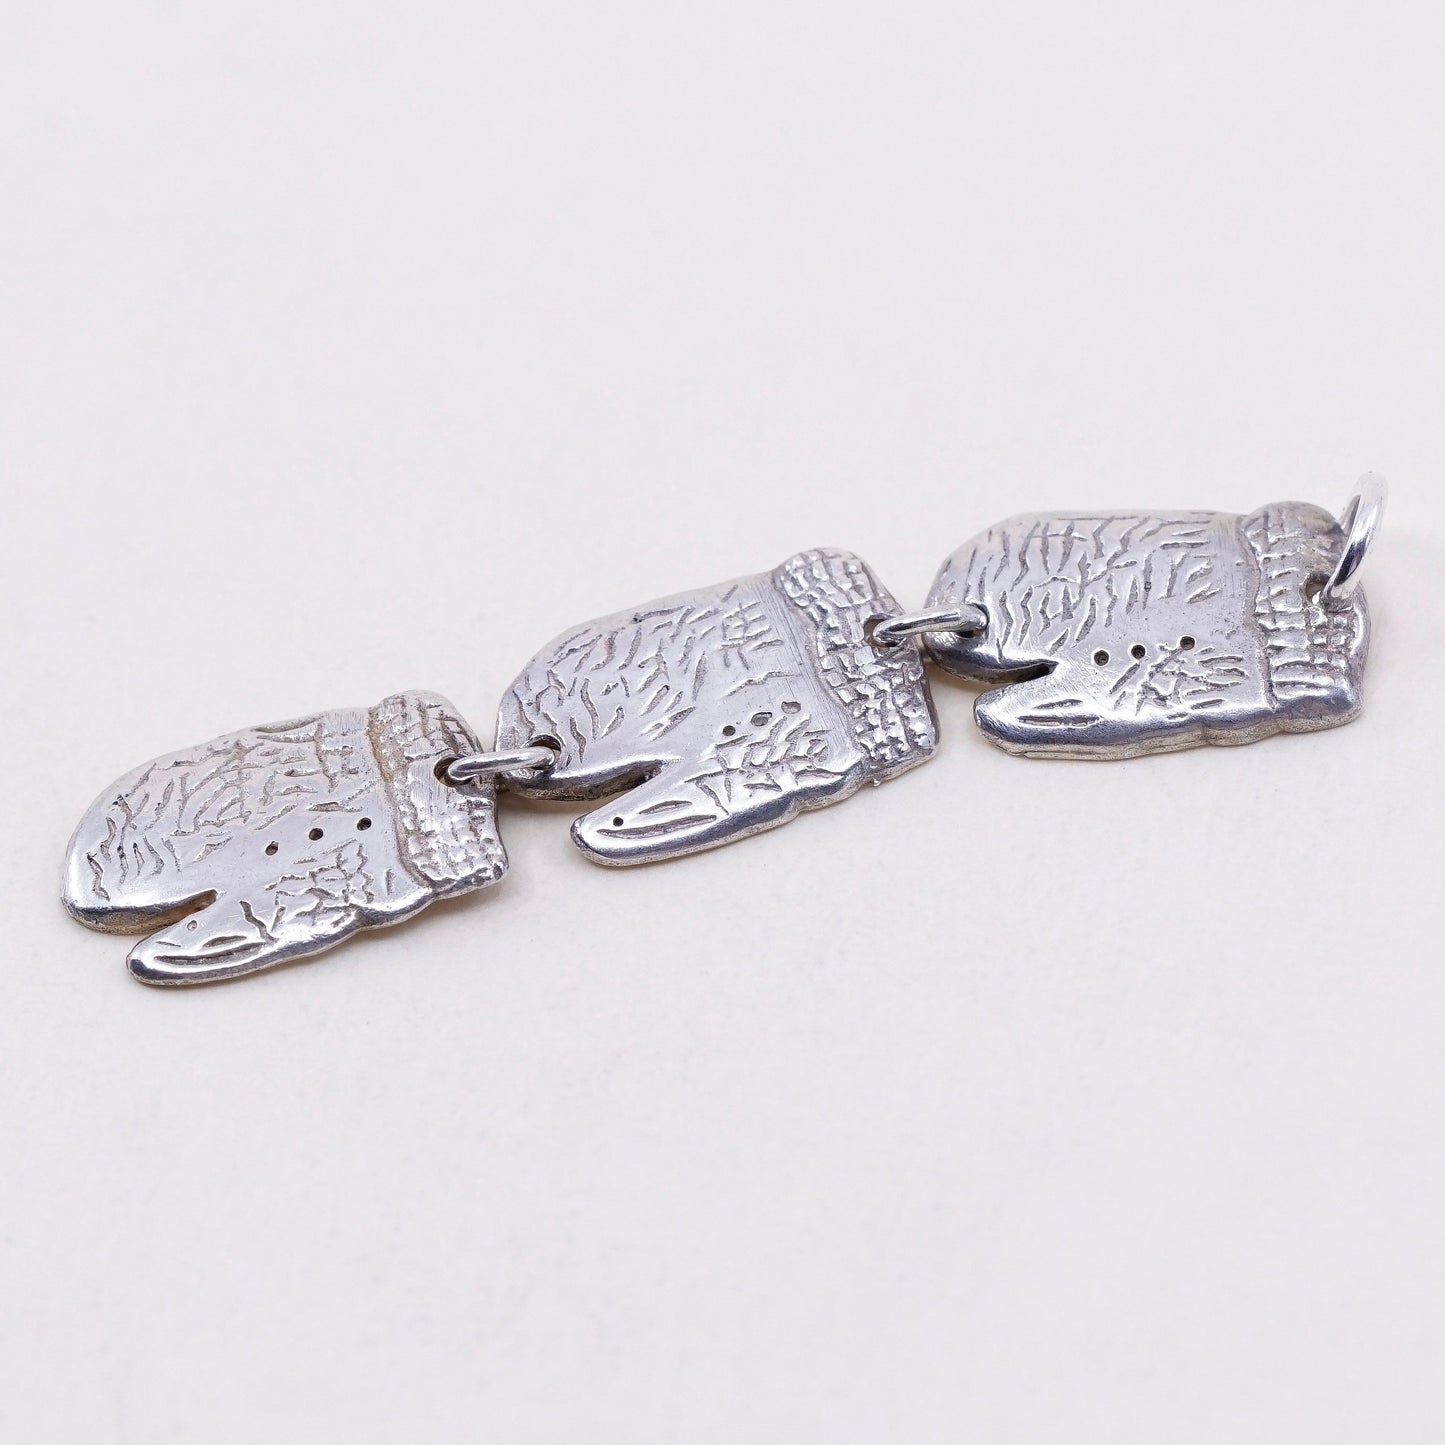 Vintage Sterling silver handmade pendant, 925 gloves, stamped 925